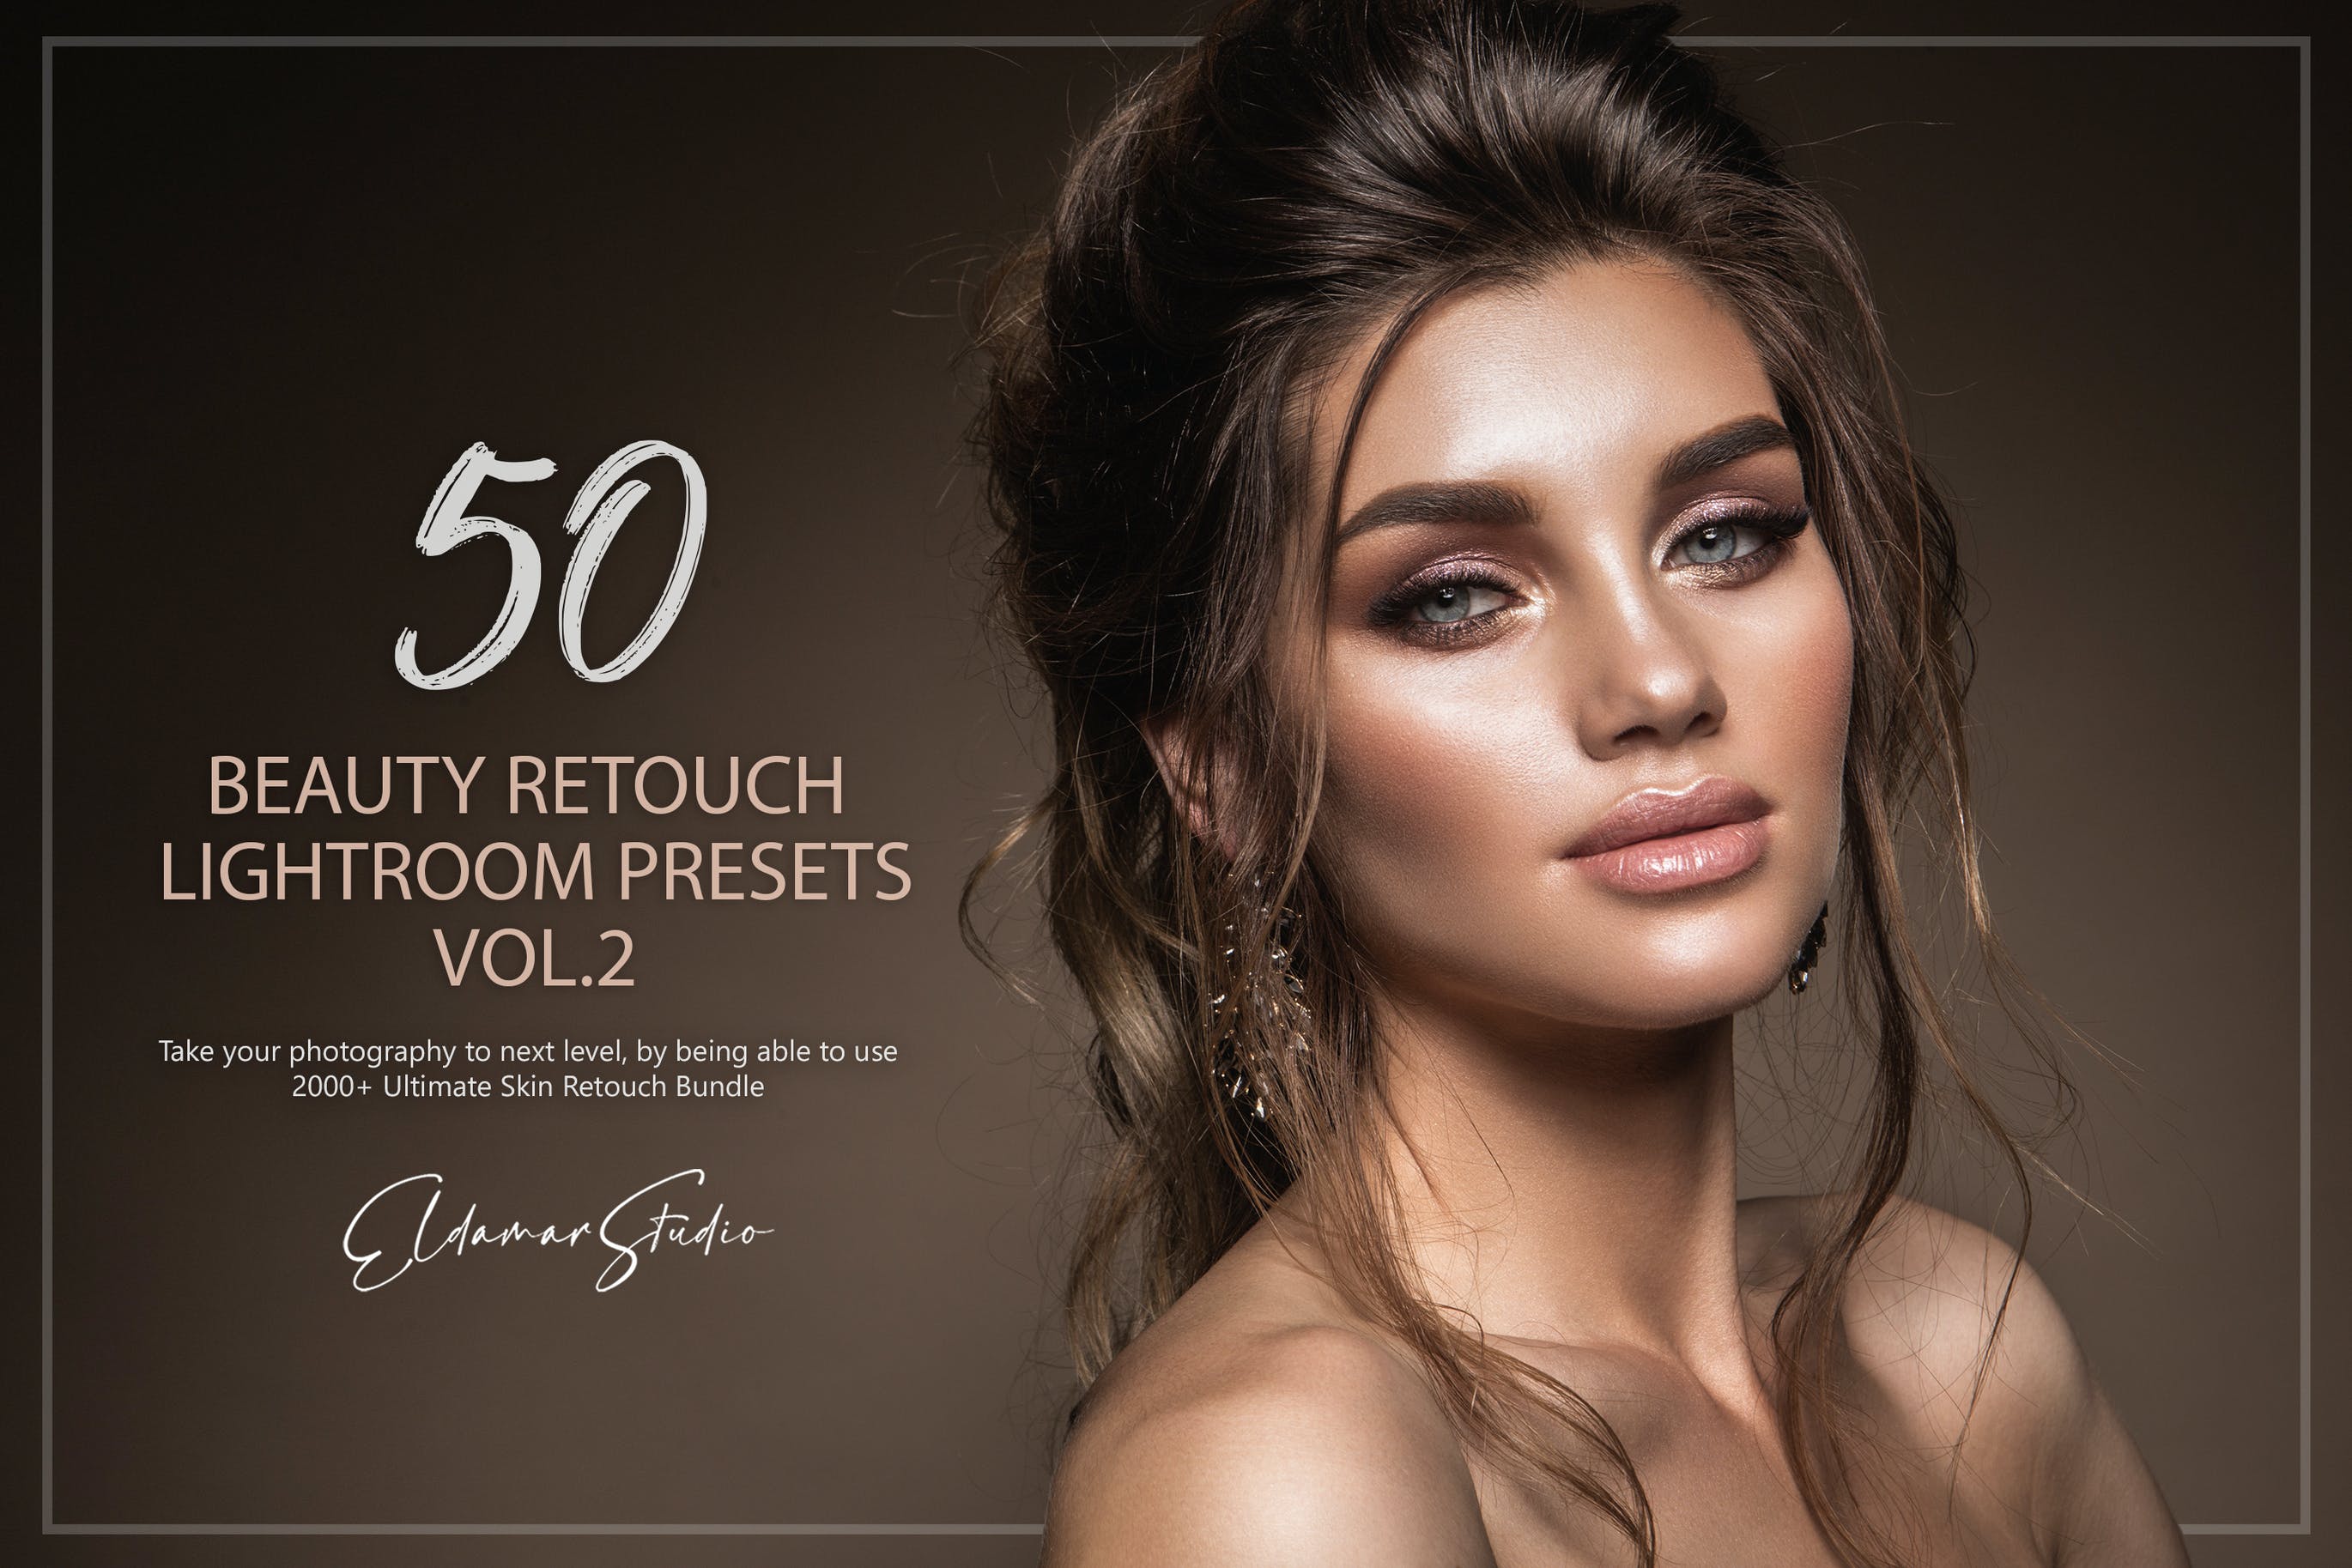 50个美容修饰照片调色滤镜LR预设v2 50 Beauty Retouch Lightroom Presets – Vol. 2 插件预设 第1张